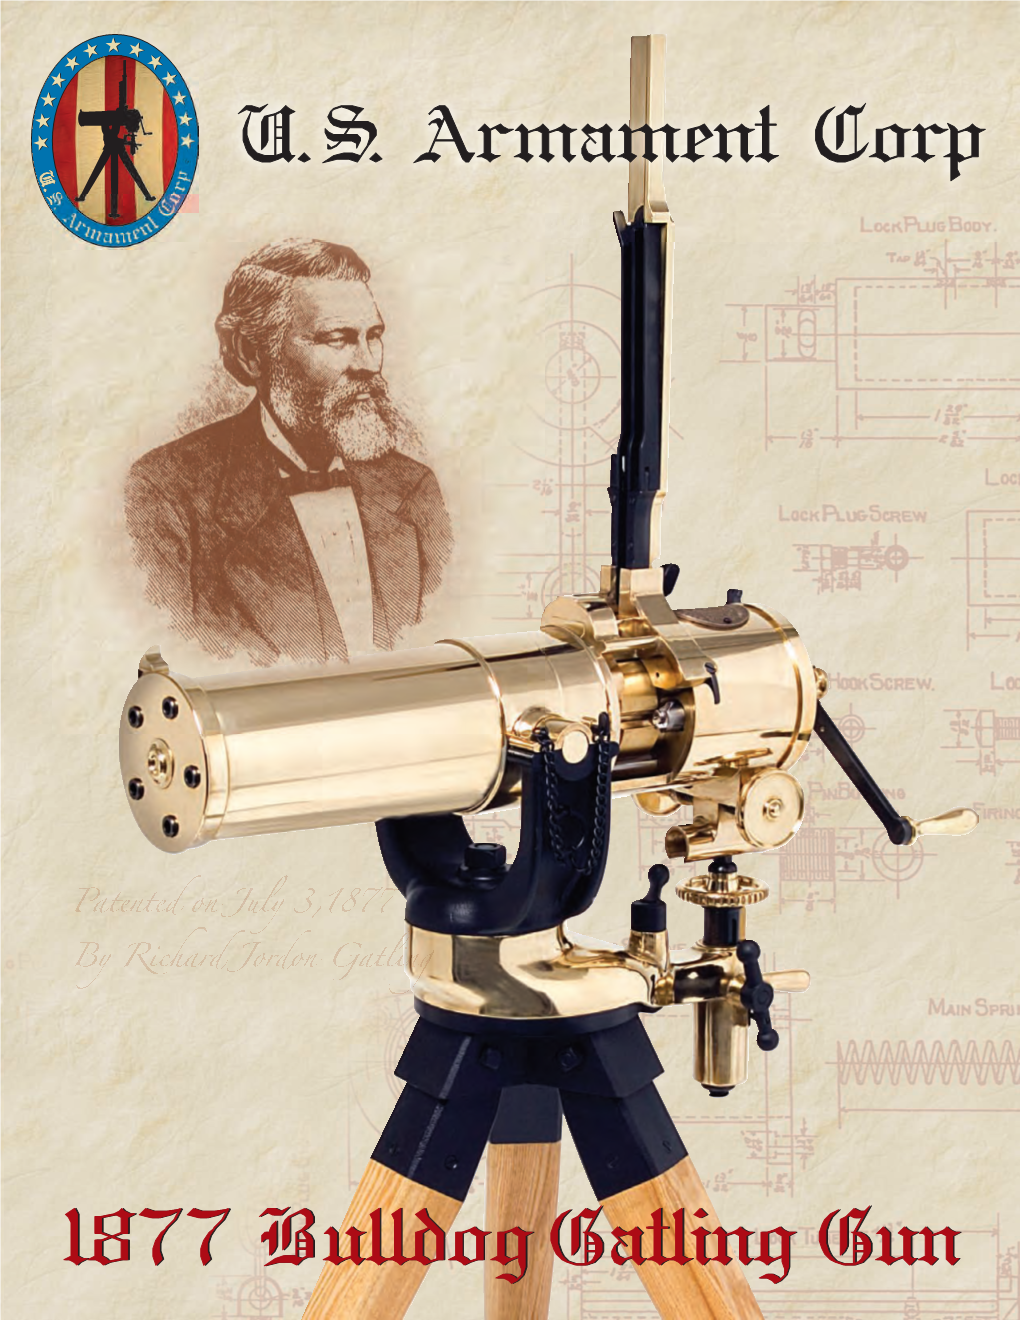 1877 Bulldoggatling Gun U.S. Armament Corp